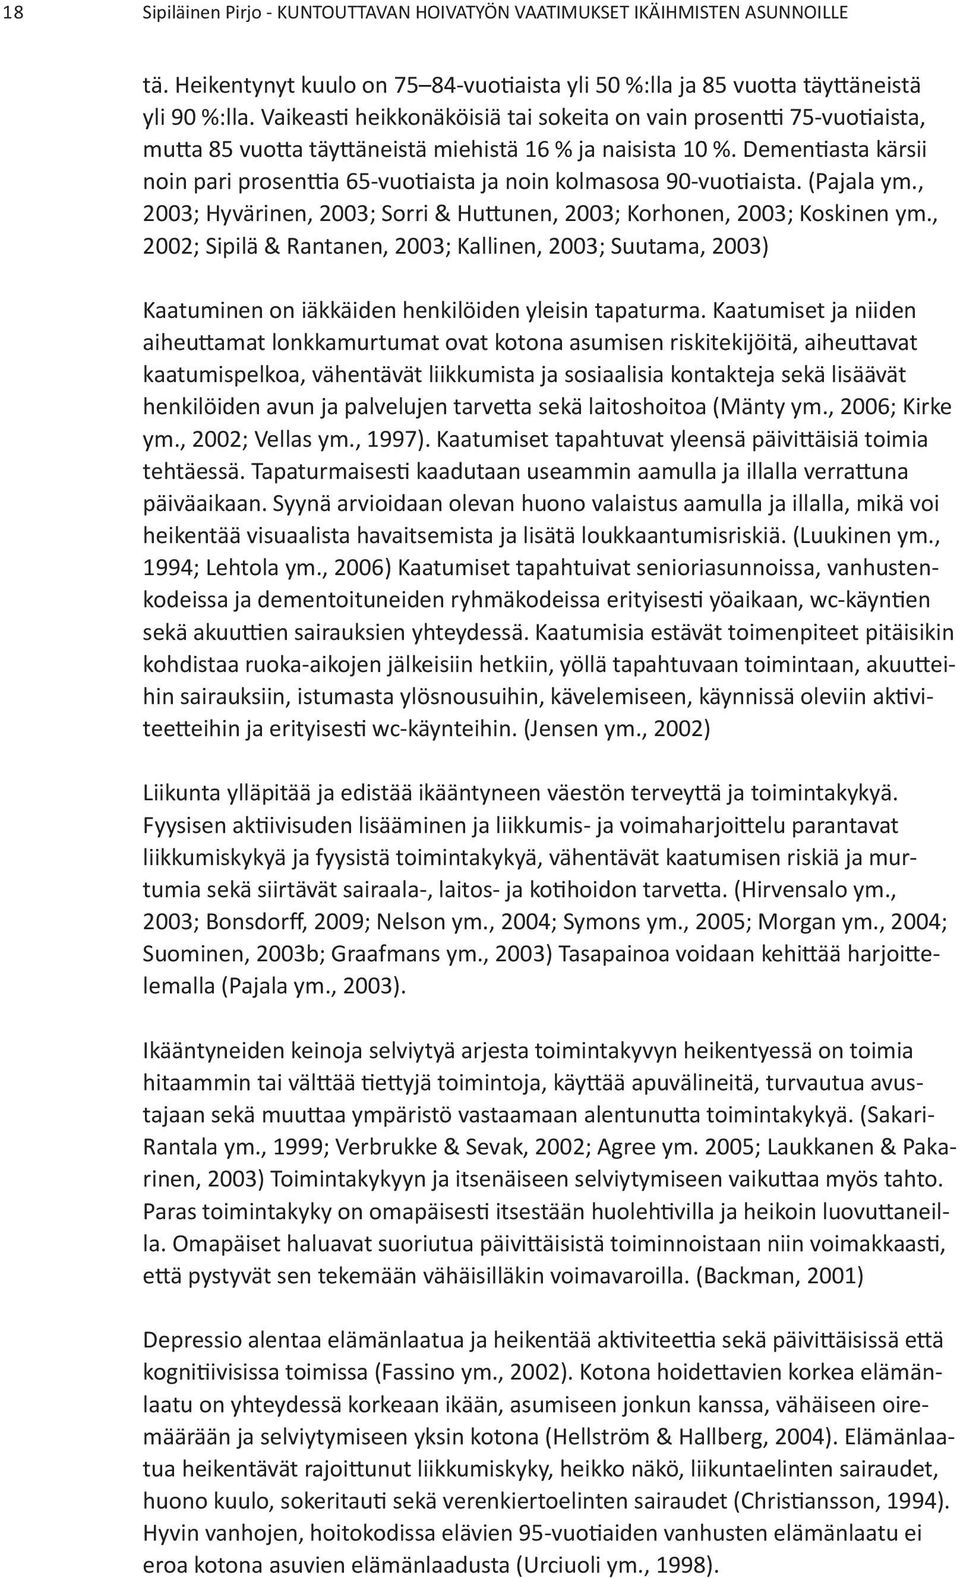 Demen asta kärsii noin pari prosen a 65-vuo aista ja noin kolmasosa 90-vuo aista. (Pajala ym., 2003; Hyvärinen, 2003; Sorri & Hu unen, 2003; Korhonen, 2003; Koskinen ym.